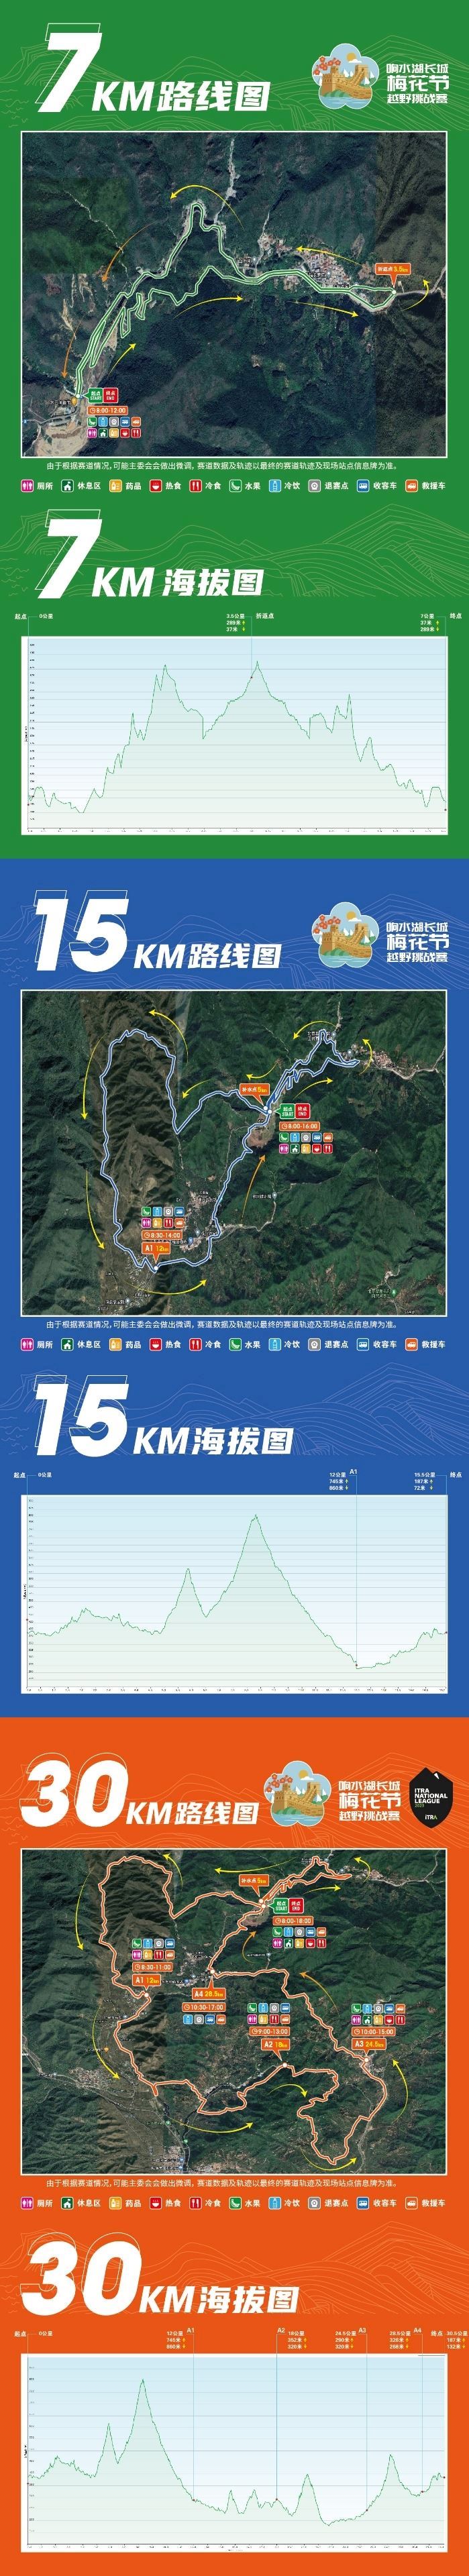 Xiangshui Lake Great Wall Ultra Trail Challenge Routenkarte